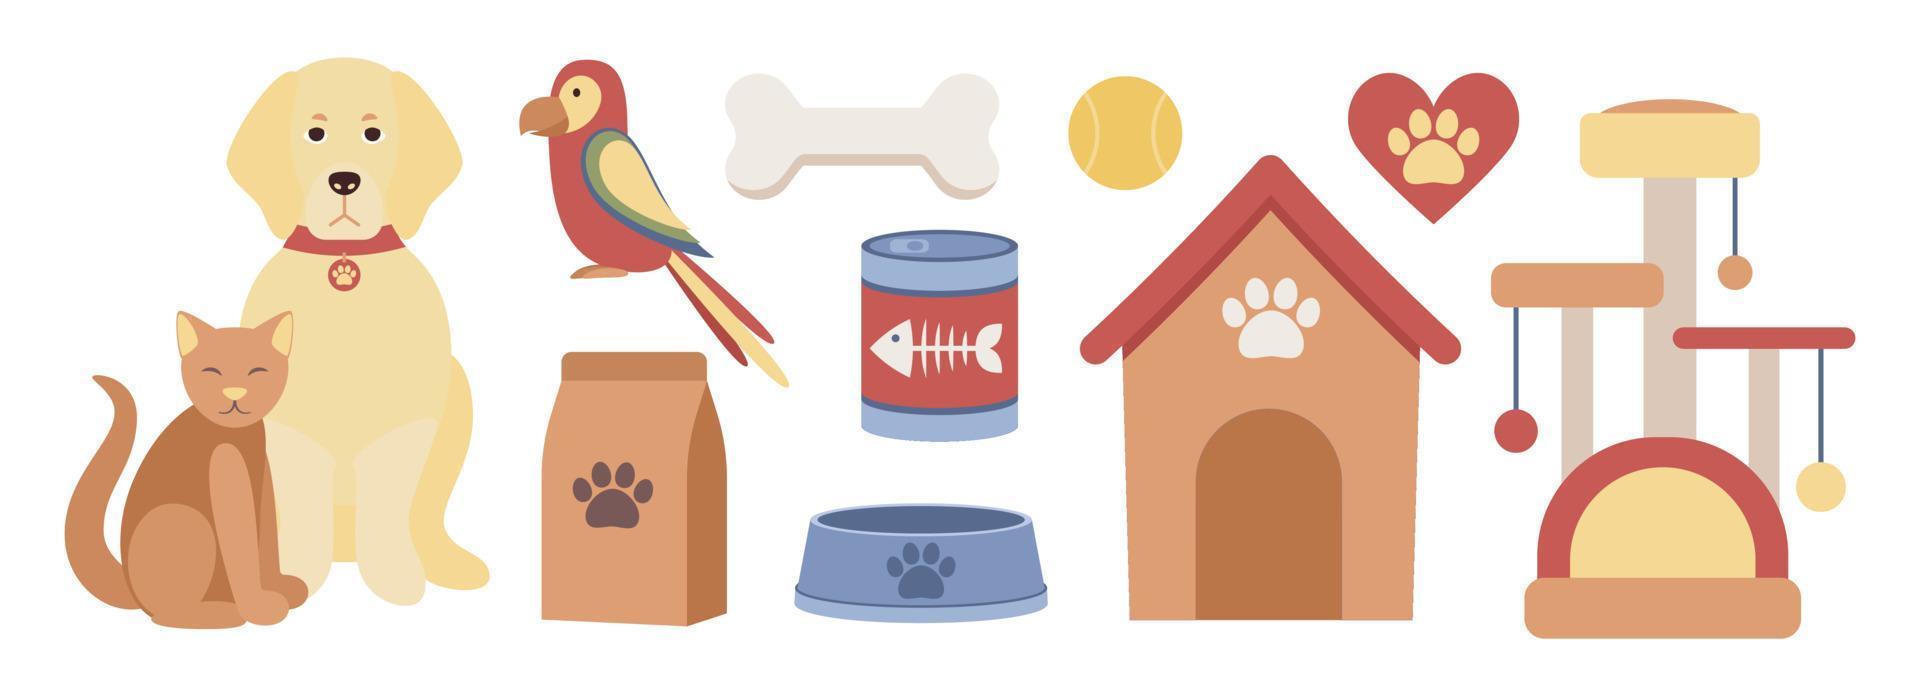 mascota tienda icono colocar. mascota alimento, mascota muebles, gato torre y rascarse correo, perro casa, loro, perro y gato y mascota suministros. vector plano ilustración